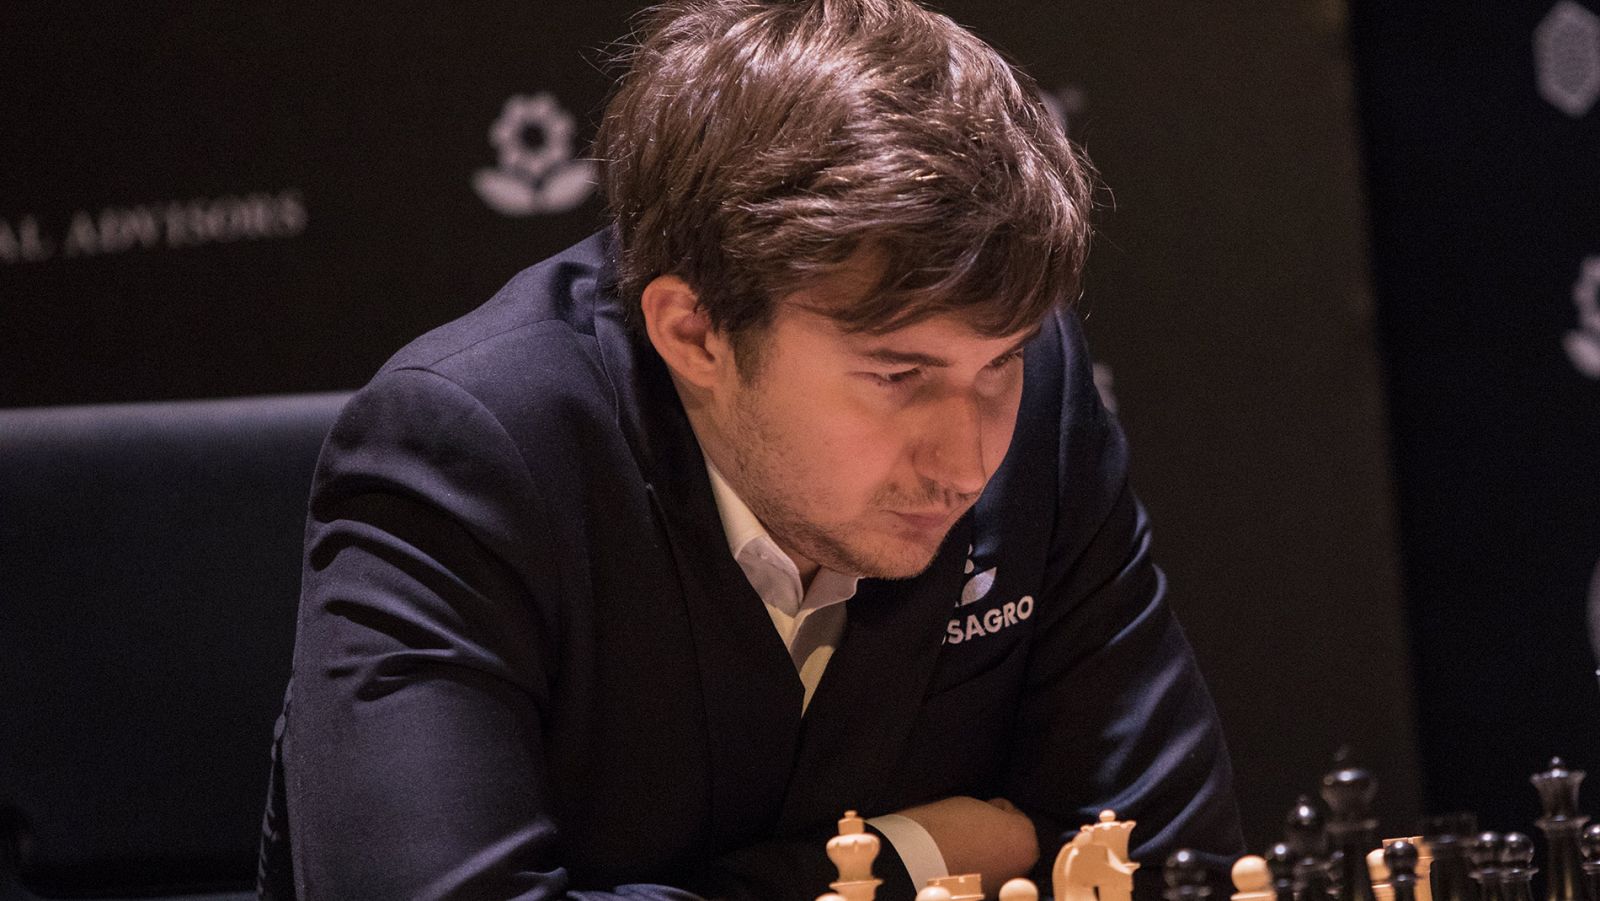 El maestro ruso de ajedrez Sergei Karjarin, en imagen ed archivo.